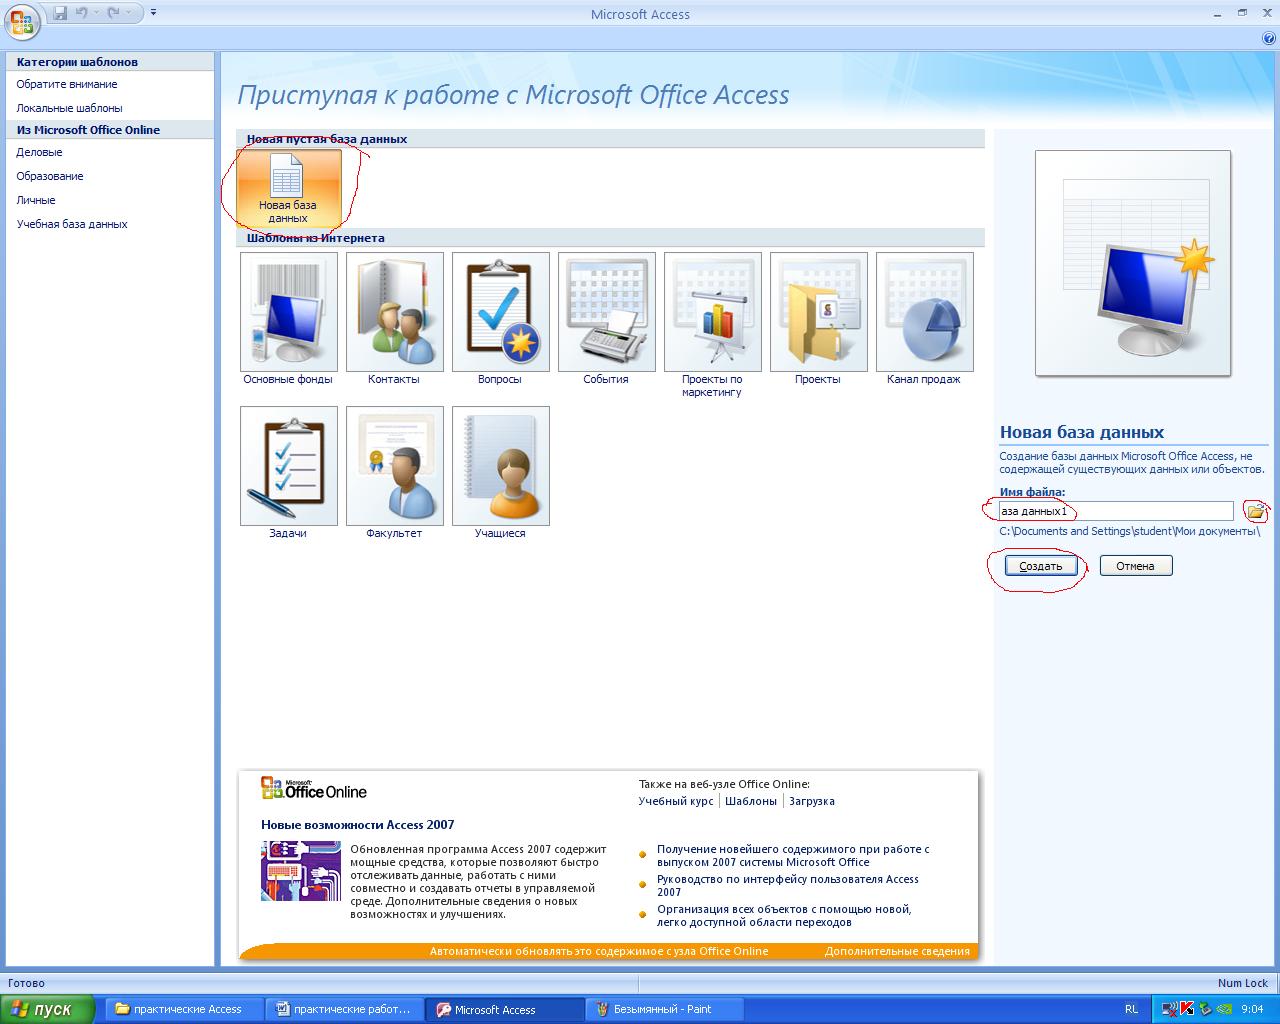 Практические работы в Microsoft Office Access 2007